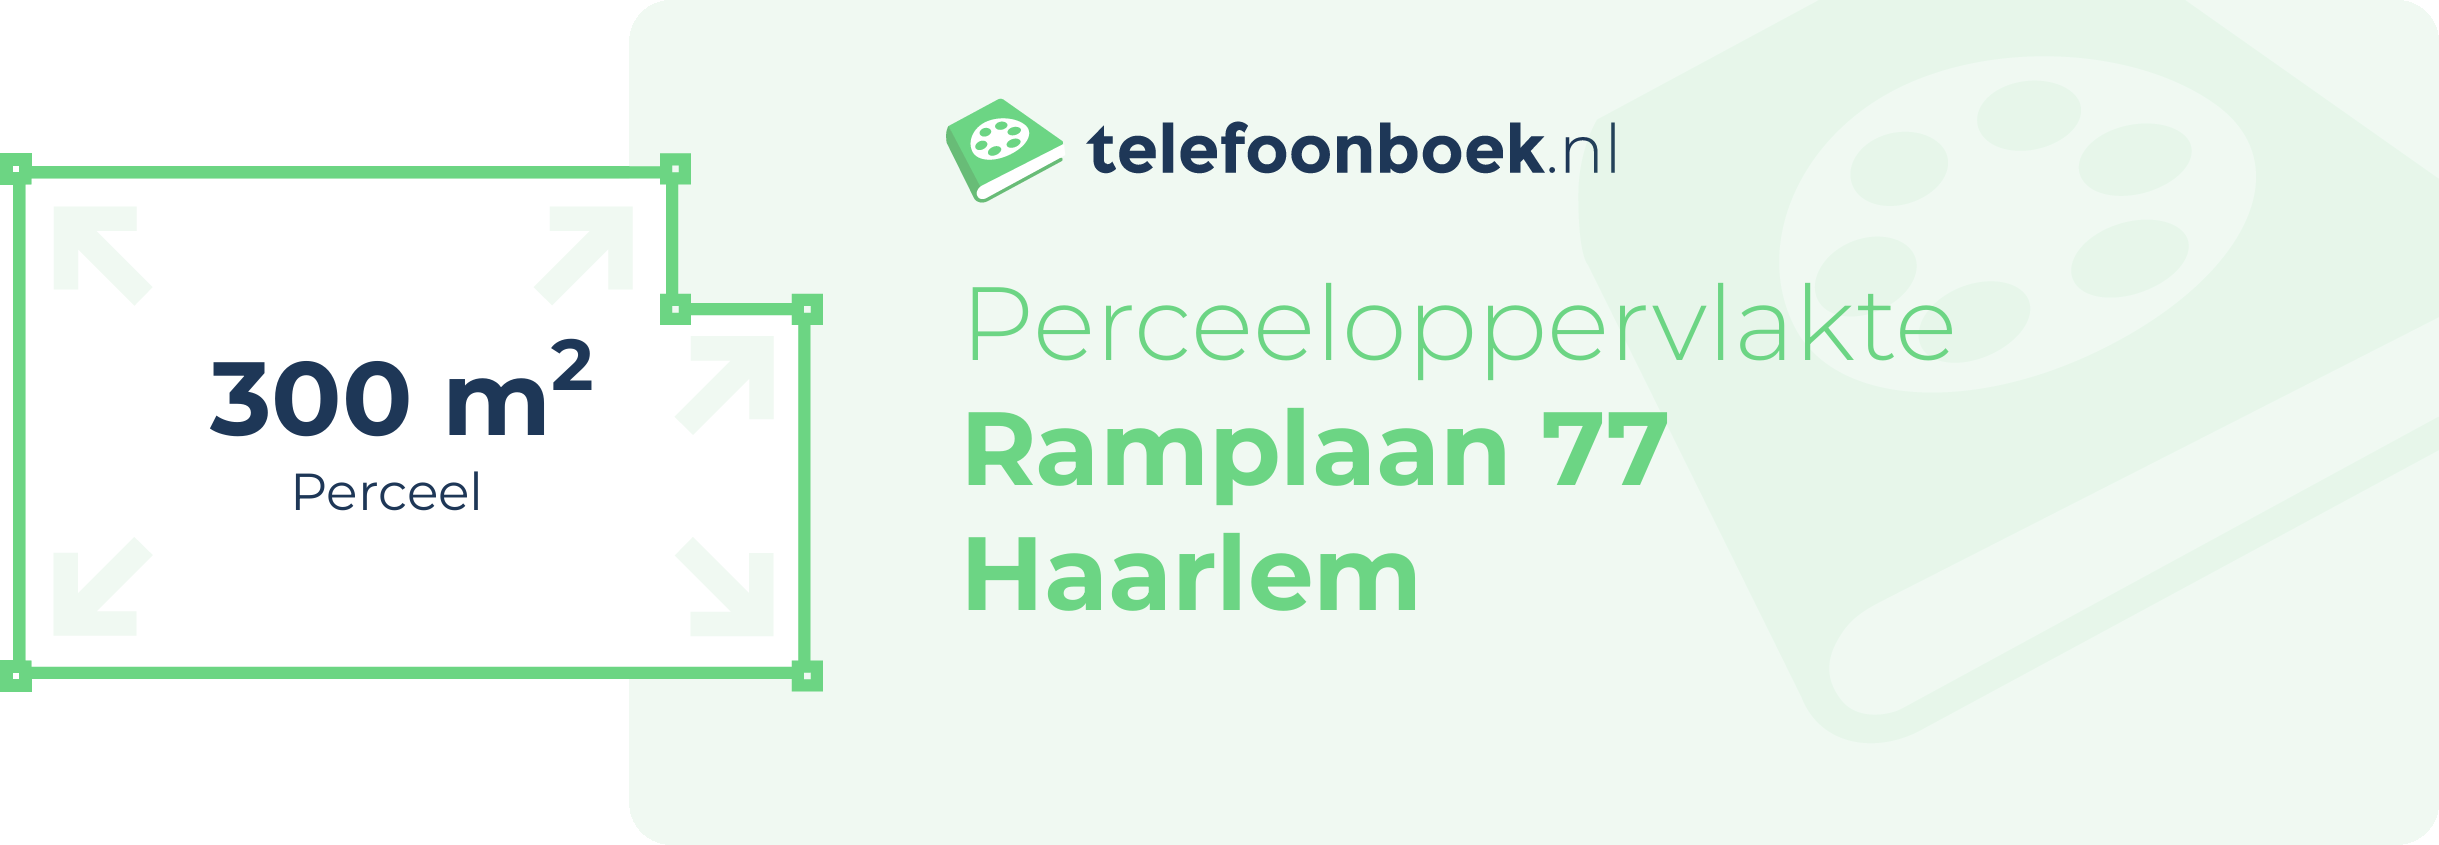 Perceeloppervlakte Ramplaan 77 Haarlem